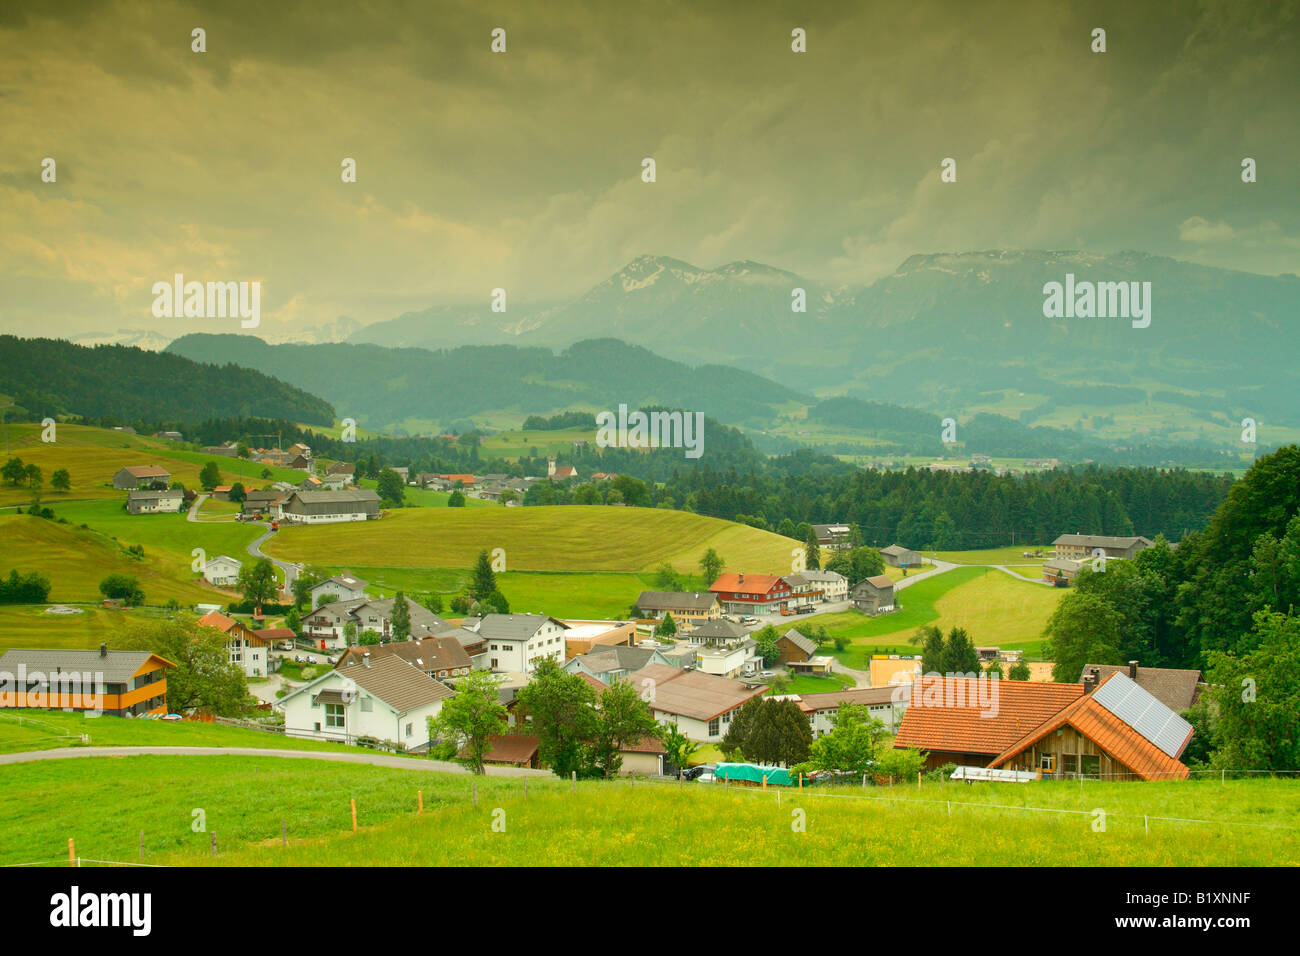 View over Langenegg village, district of Bregenzerwald, Vorarlberg region, Austria Stock Photo